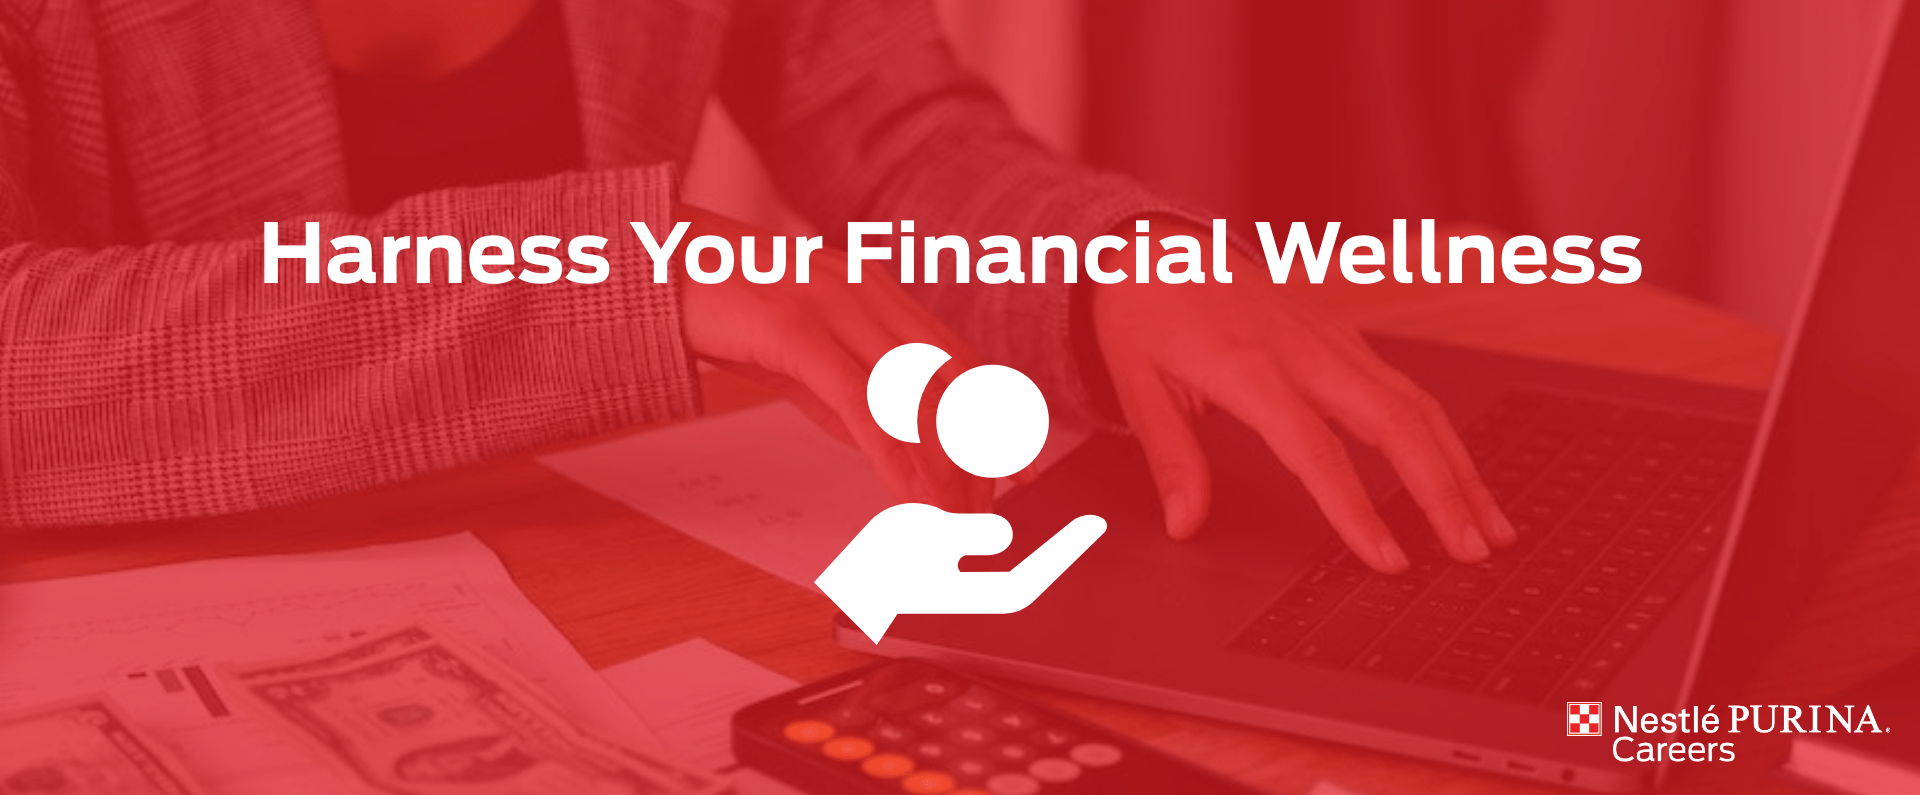 Finance Benefits Blog Header